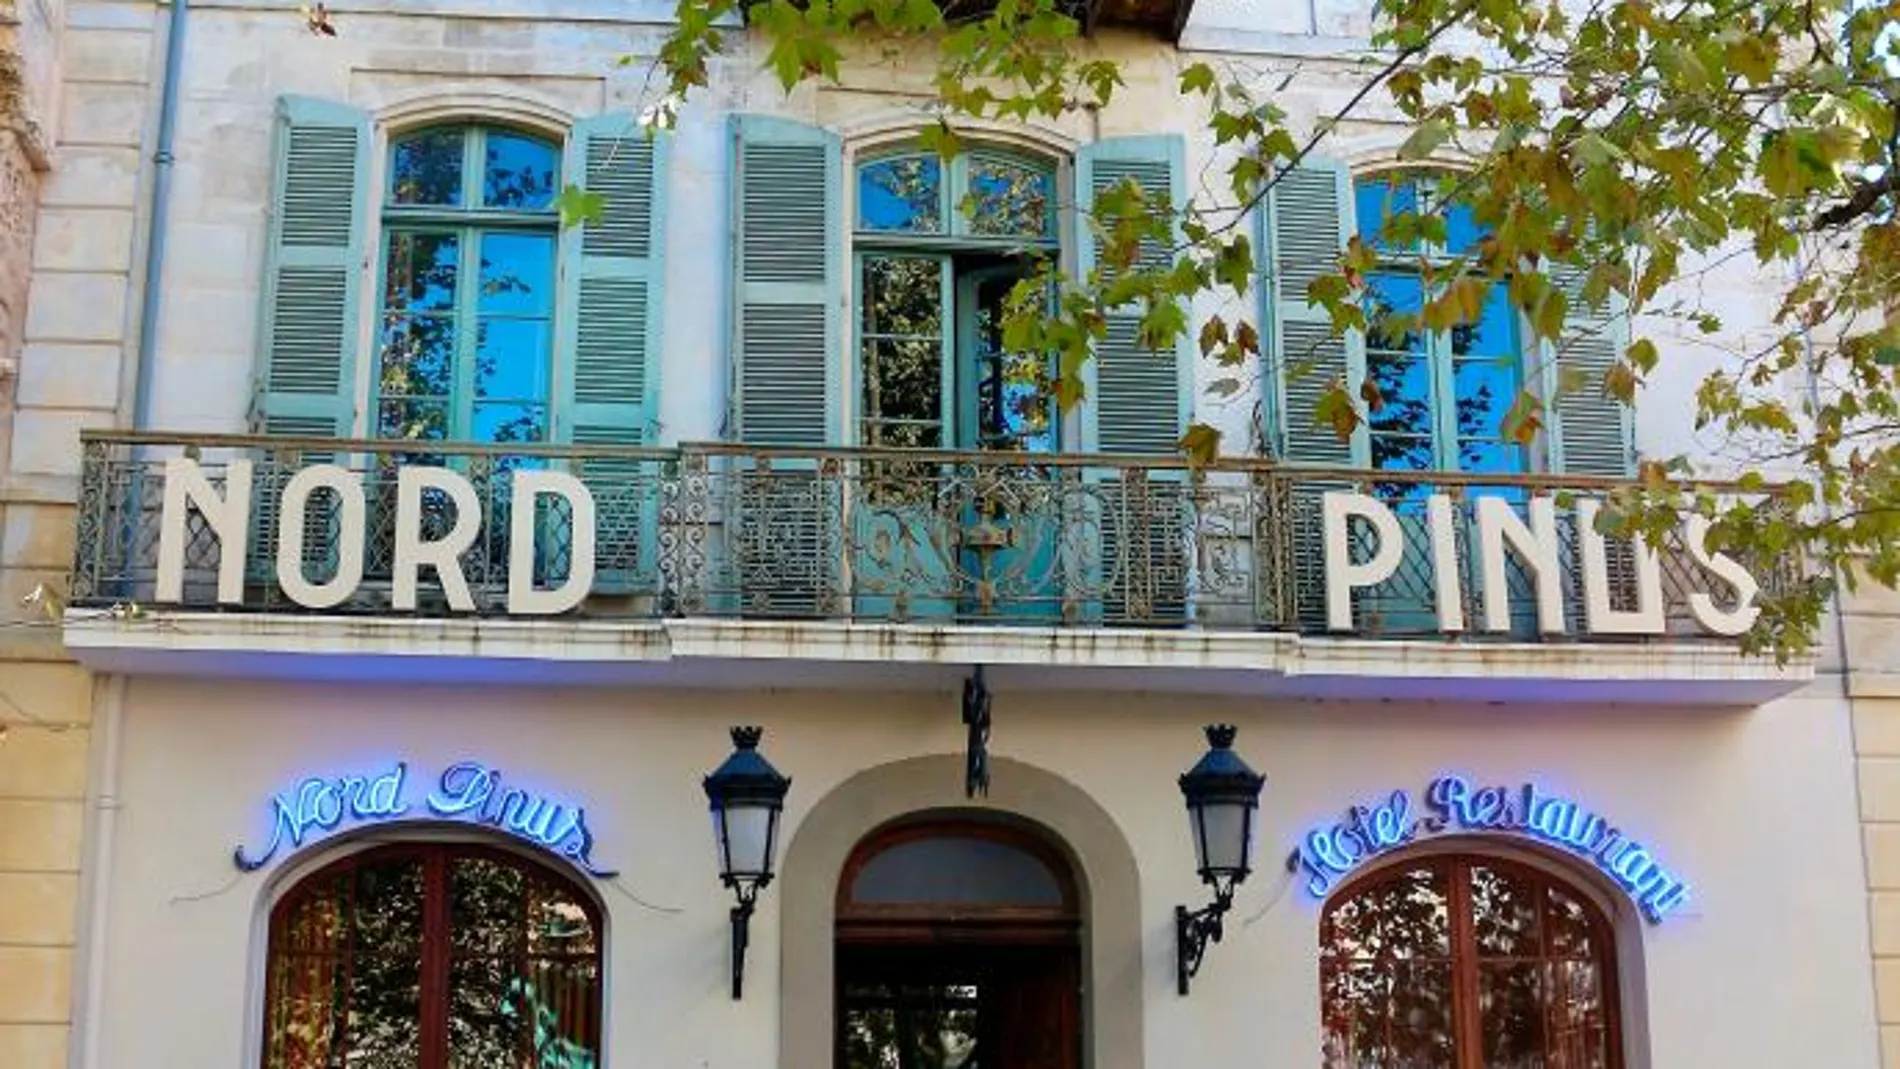 Hotel Nord-Pinus de Arles, cuando la leyenda te precede